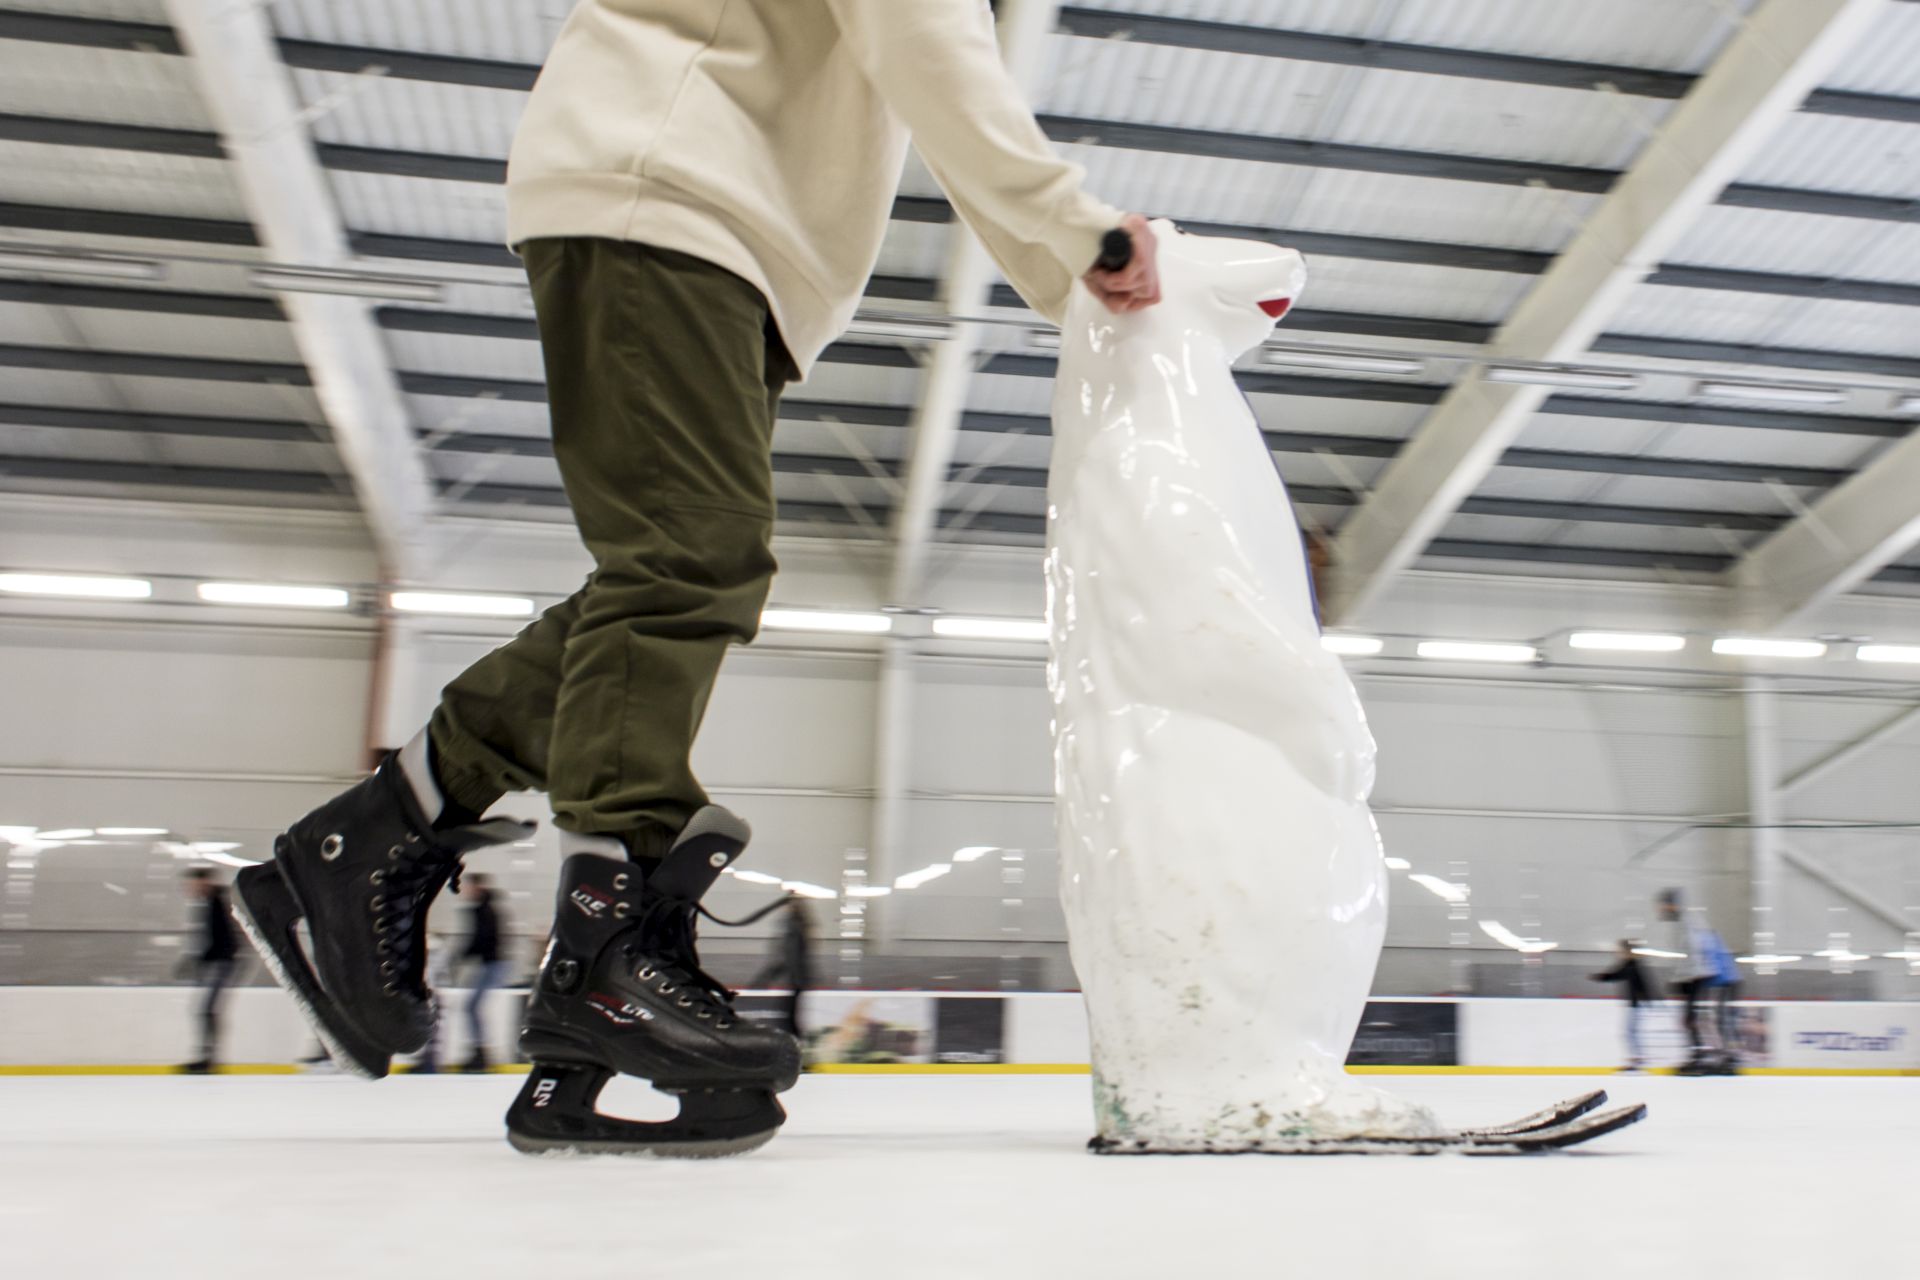 dziecko z misiem - podpórką do nauki jazdy na lodzie (fot. Adam Ciereszko)